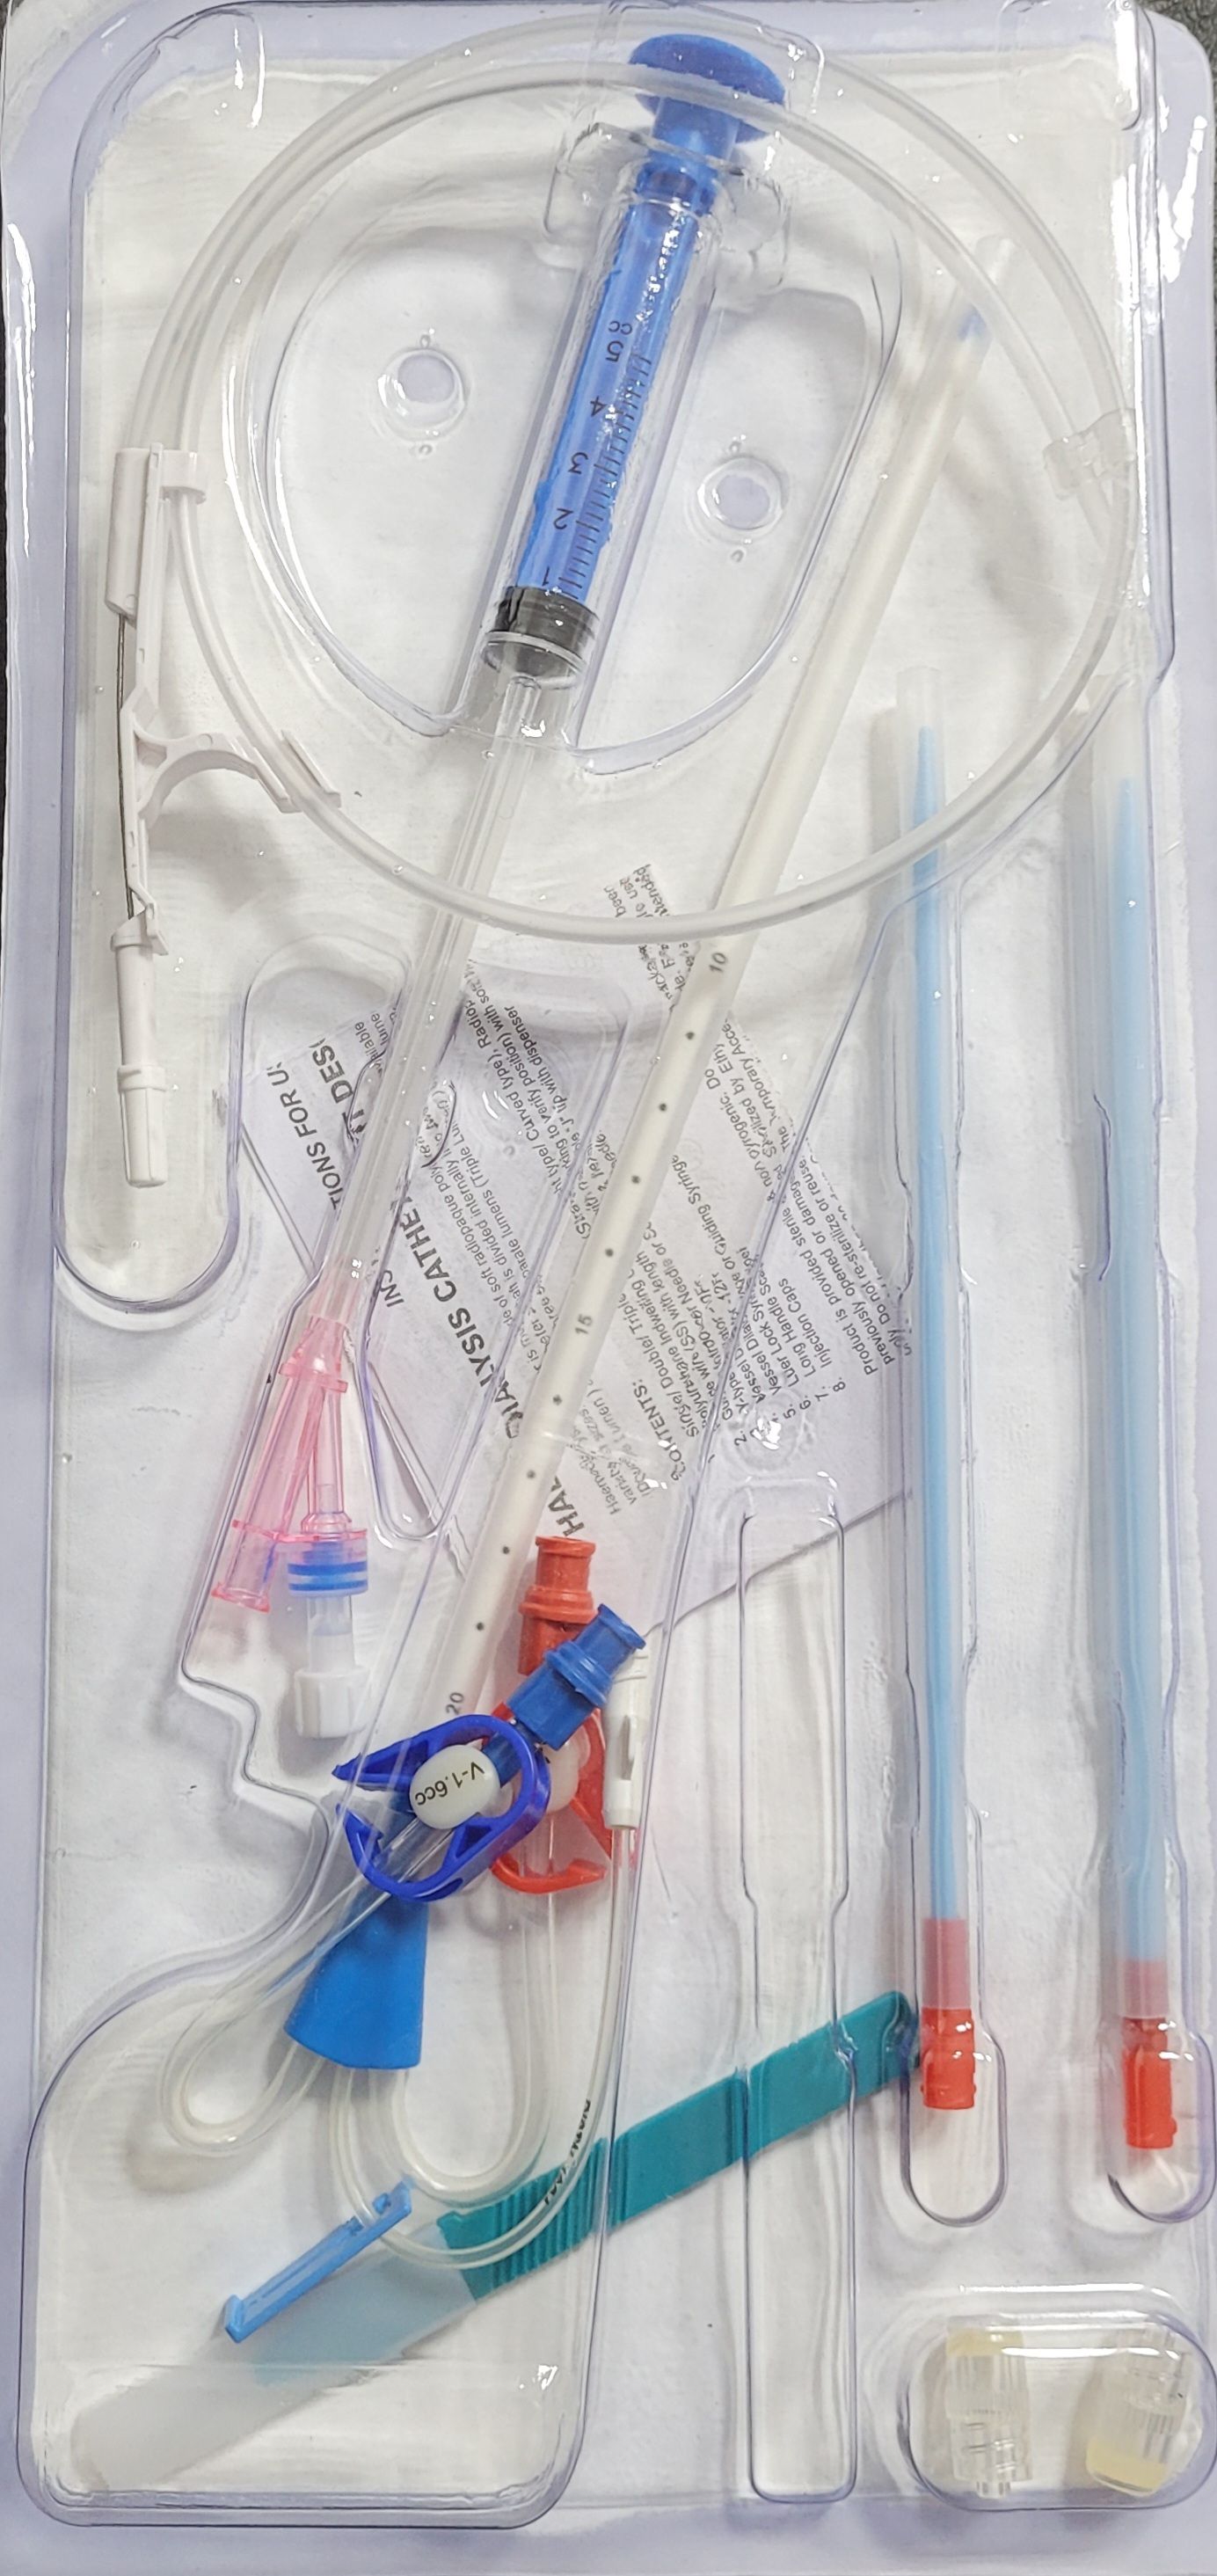 1-کتتر همودیالیز(شالدون) ۳ راه (۳ لومن) 12 FR- 3 Lumen- 8 inch 200 mm length of catheter